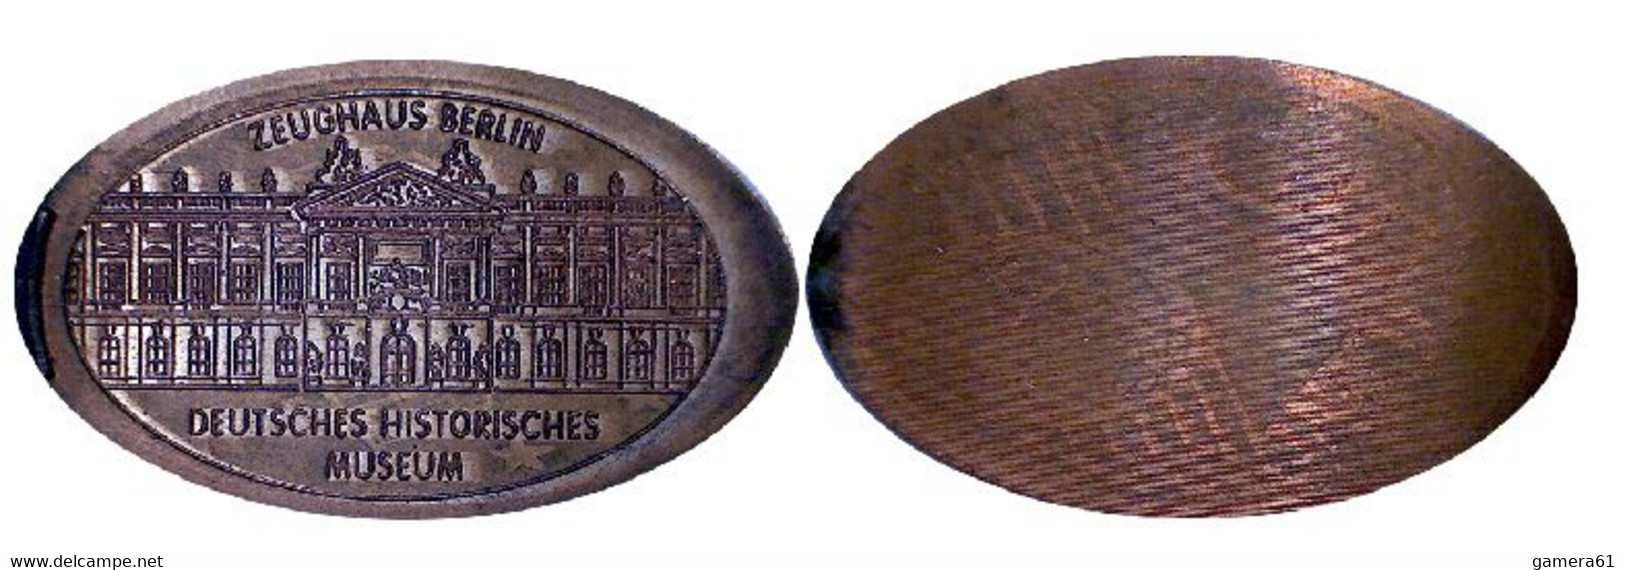 04501 GETTONE TOKEN JETON FICHA ZEUGHAUS-BERLIN DEUTESCHES HISTORISCHES MUSEUM - Monedas Elongadas (elongated Coins)